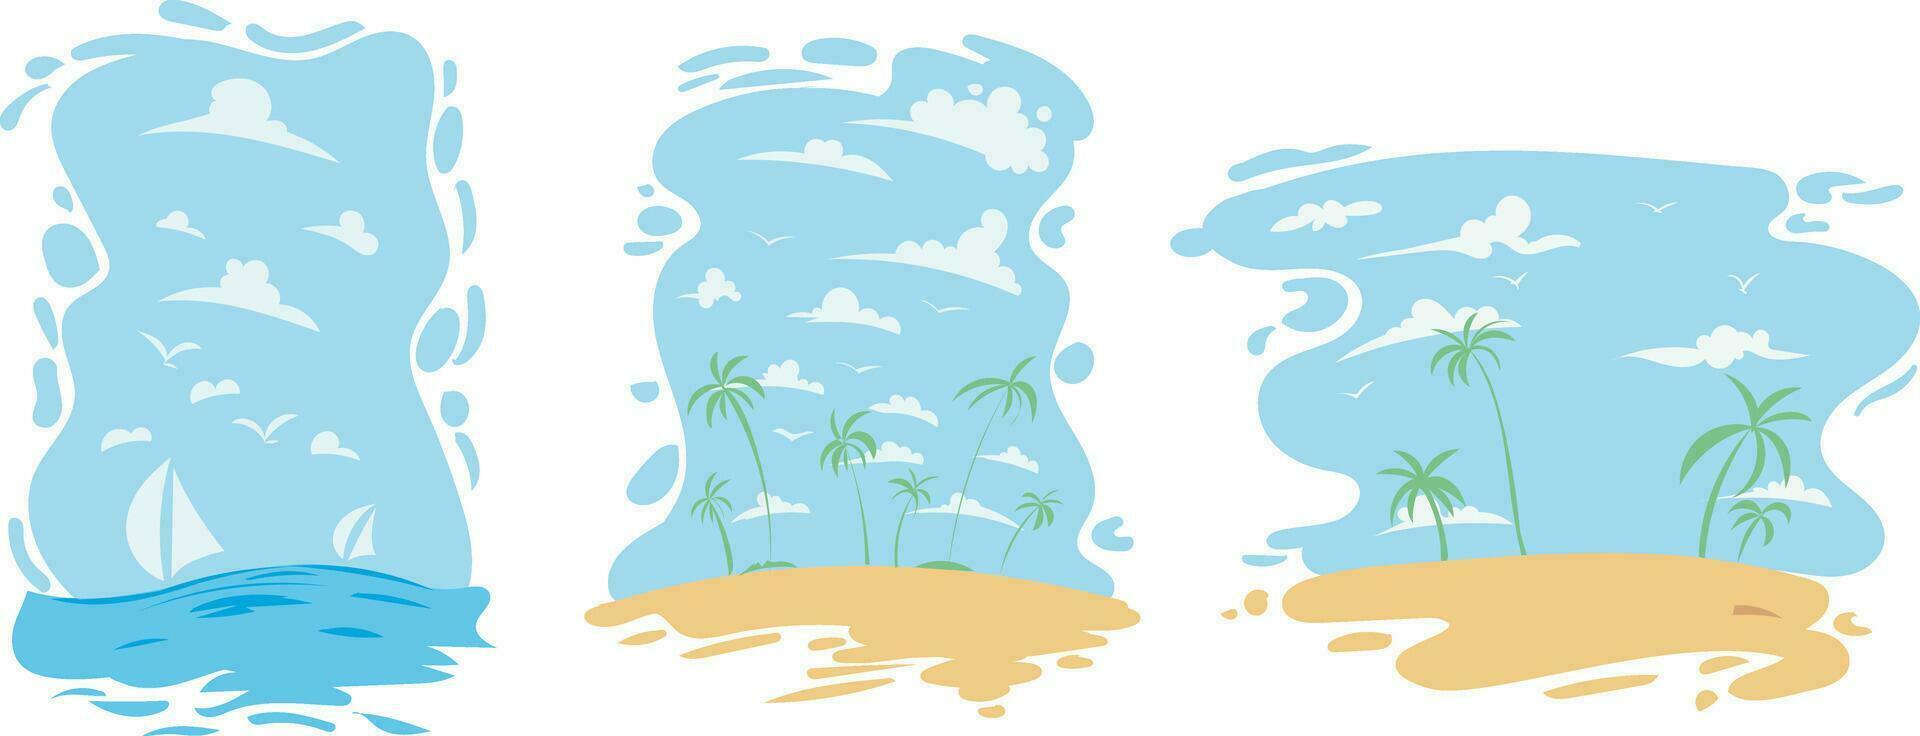 reeks van zomer reizen folders met strand items en palm boom. vector illustratie